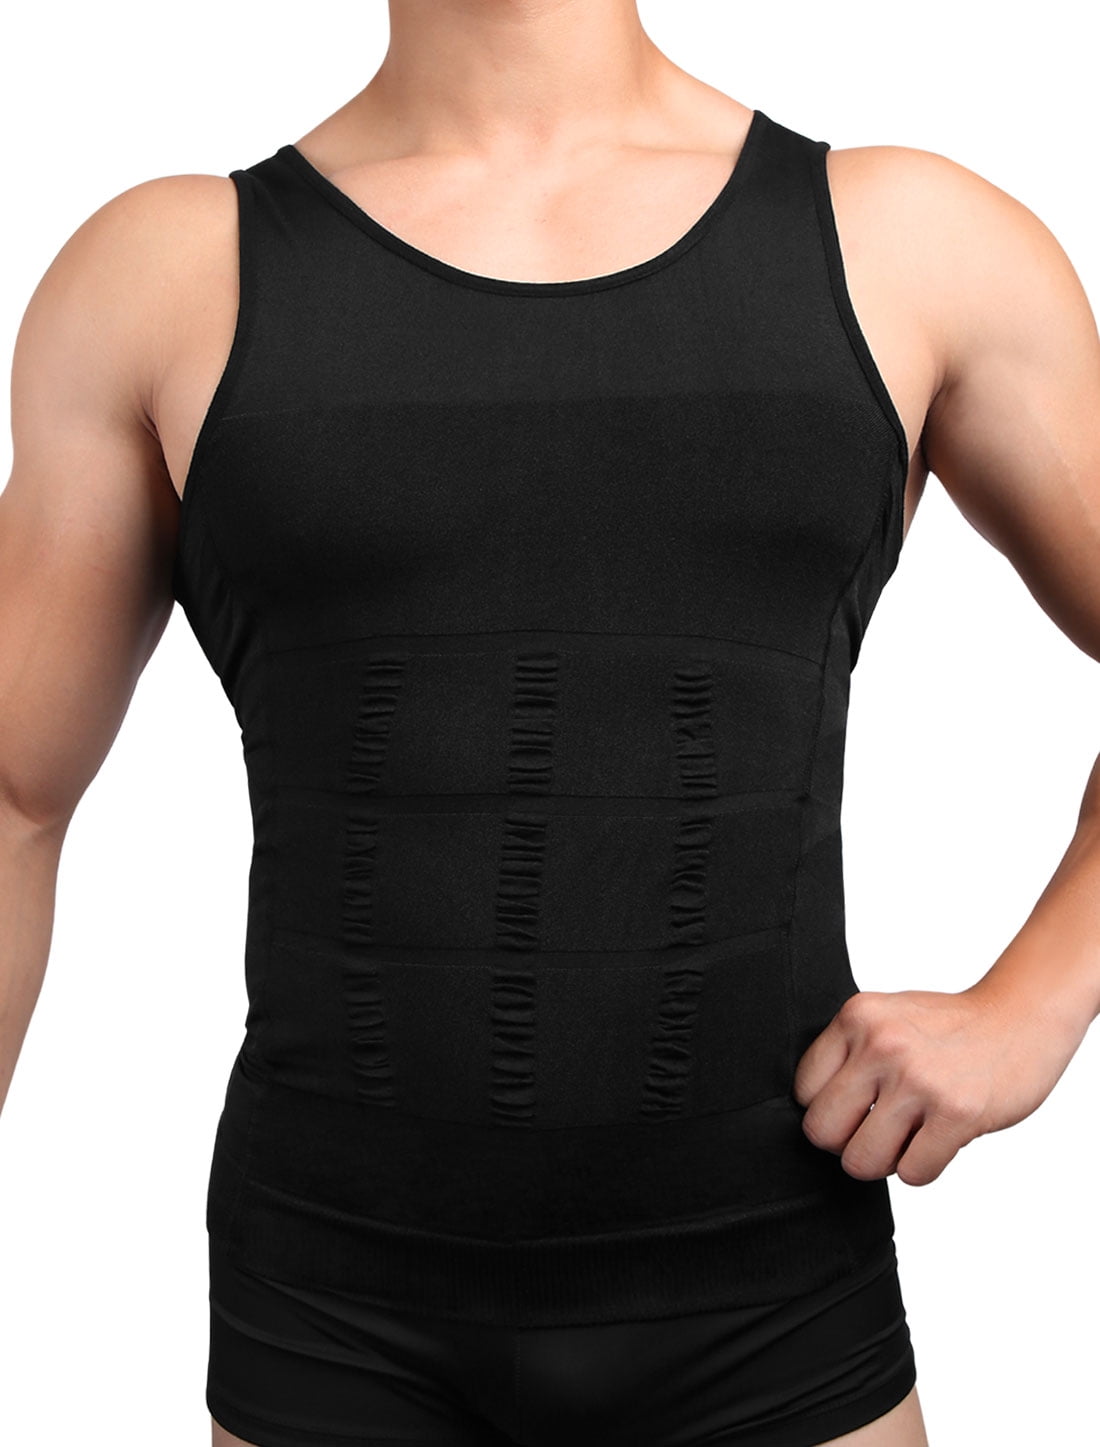 Stomach Belly Men's Shaper Slimmer T Shirt Vest Cami Fajas Trimmer Trainer Belt 